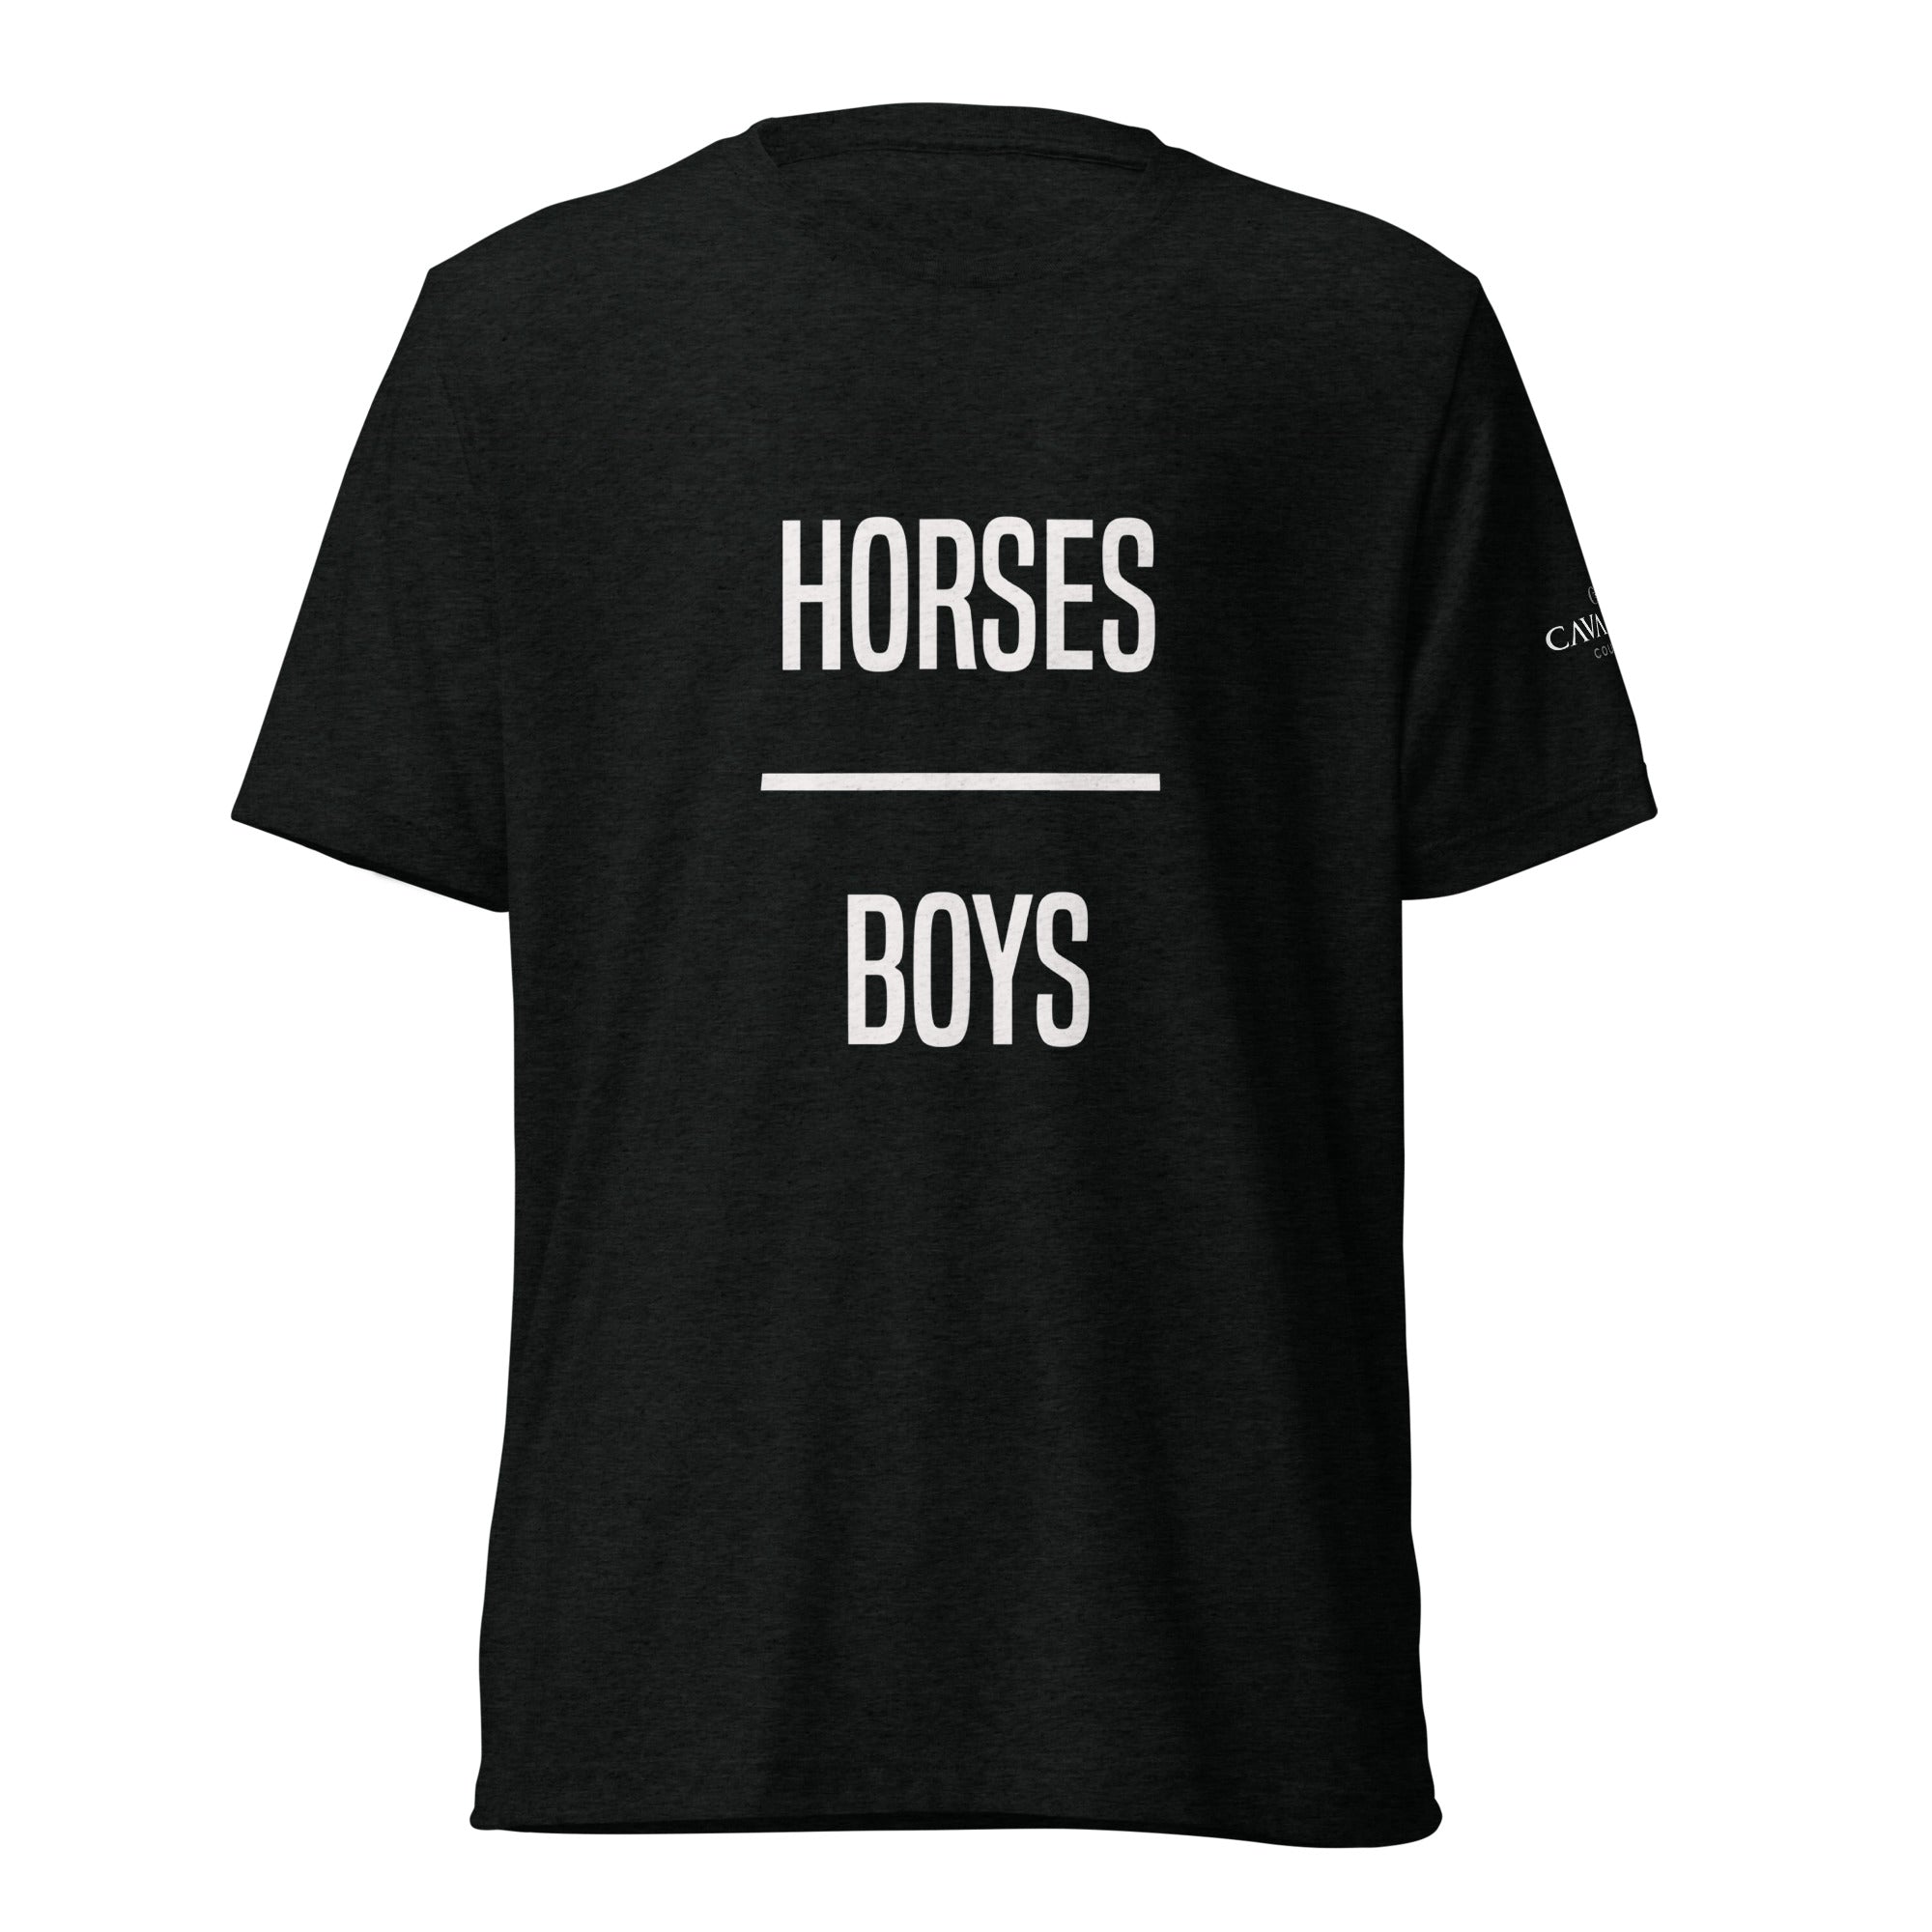 Horses Over Boys Short Sleeve Tee